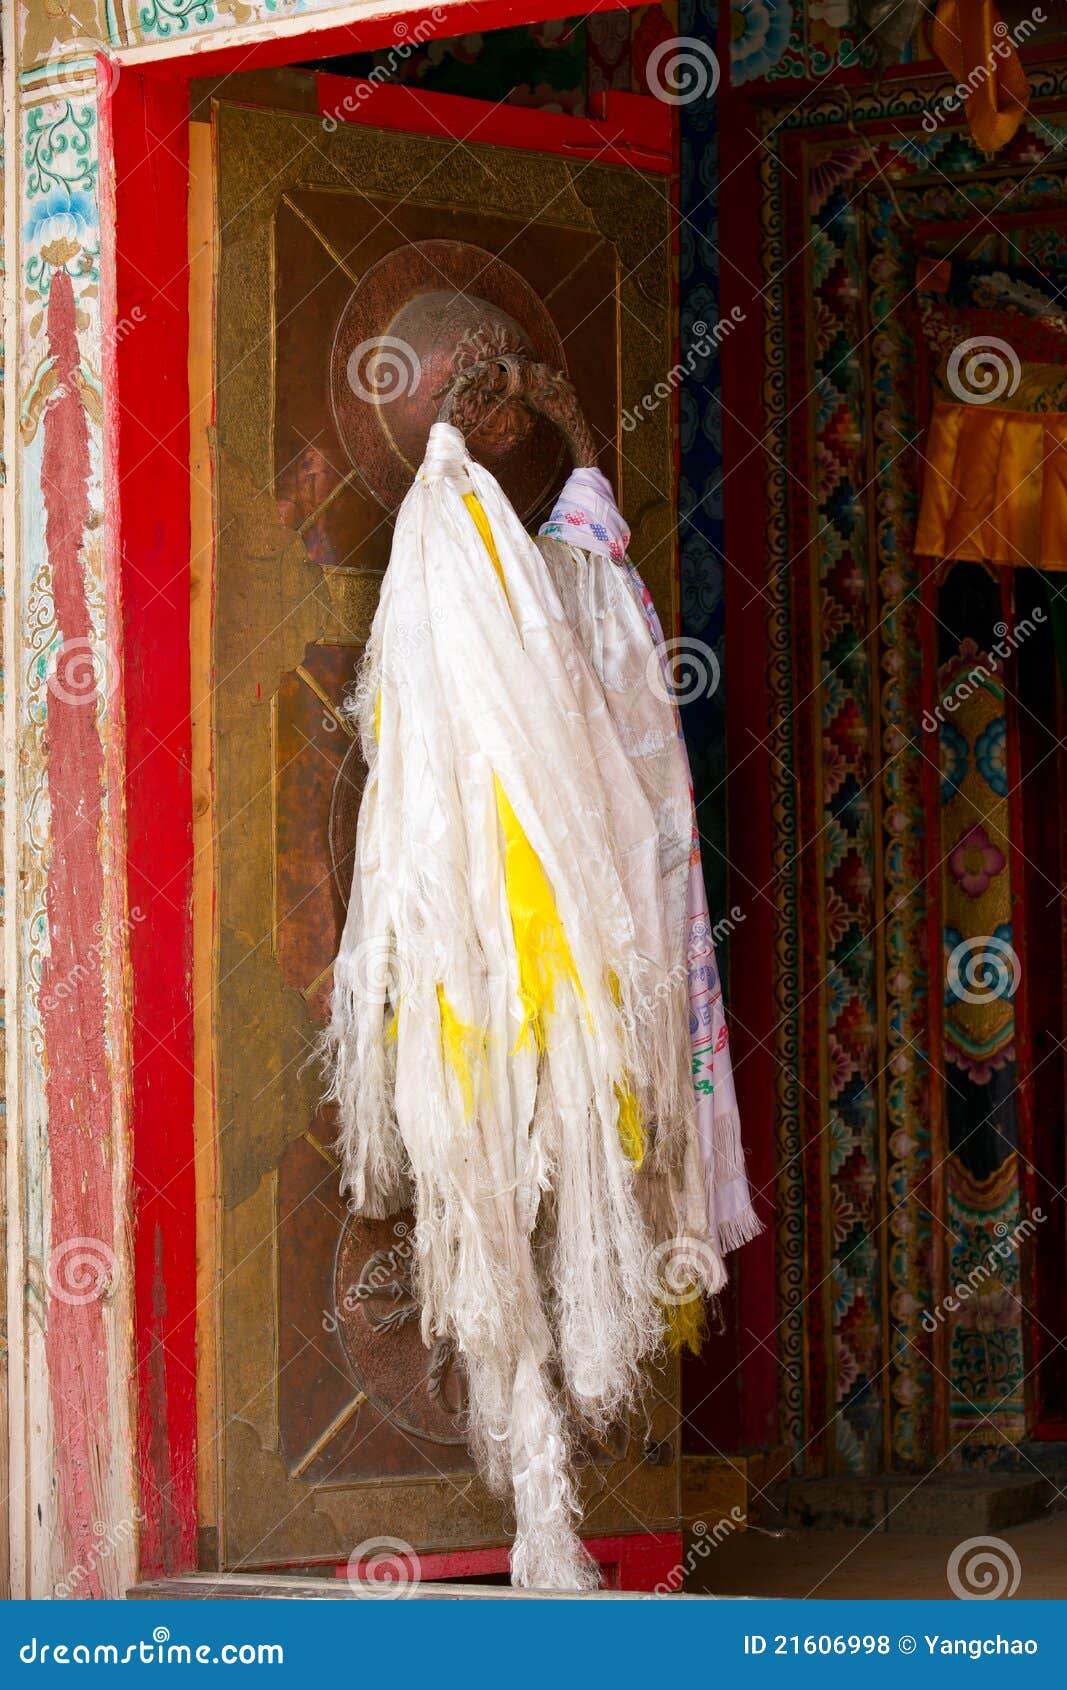 tibetan door with hada scarf